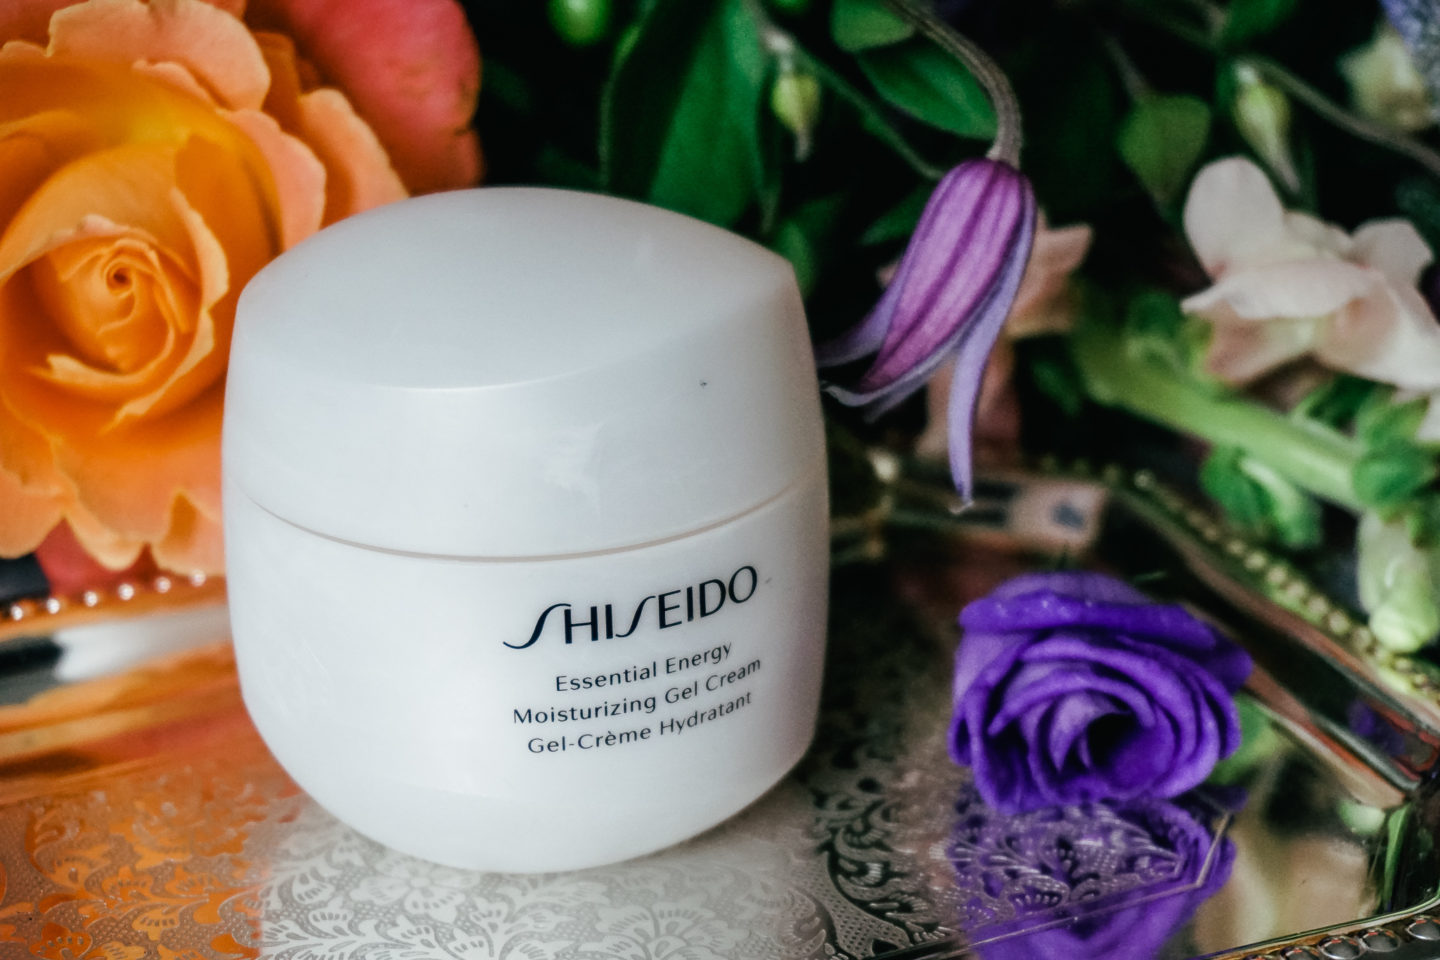 Шисейдо крем для лица: отзывы об антивозрастном увлажняющем shiseido после 50